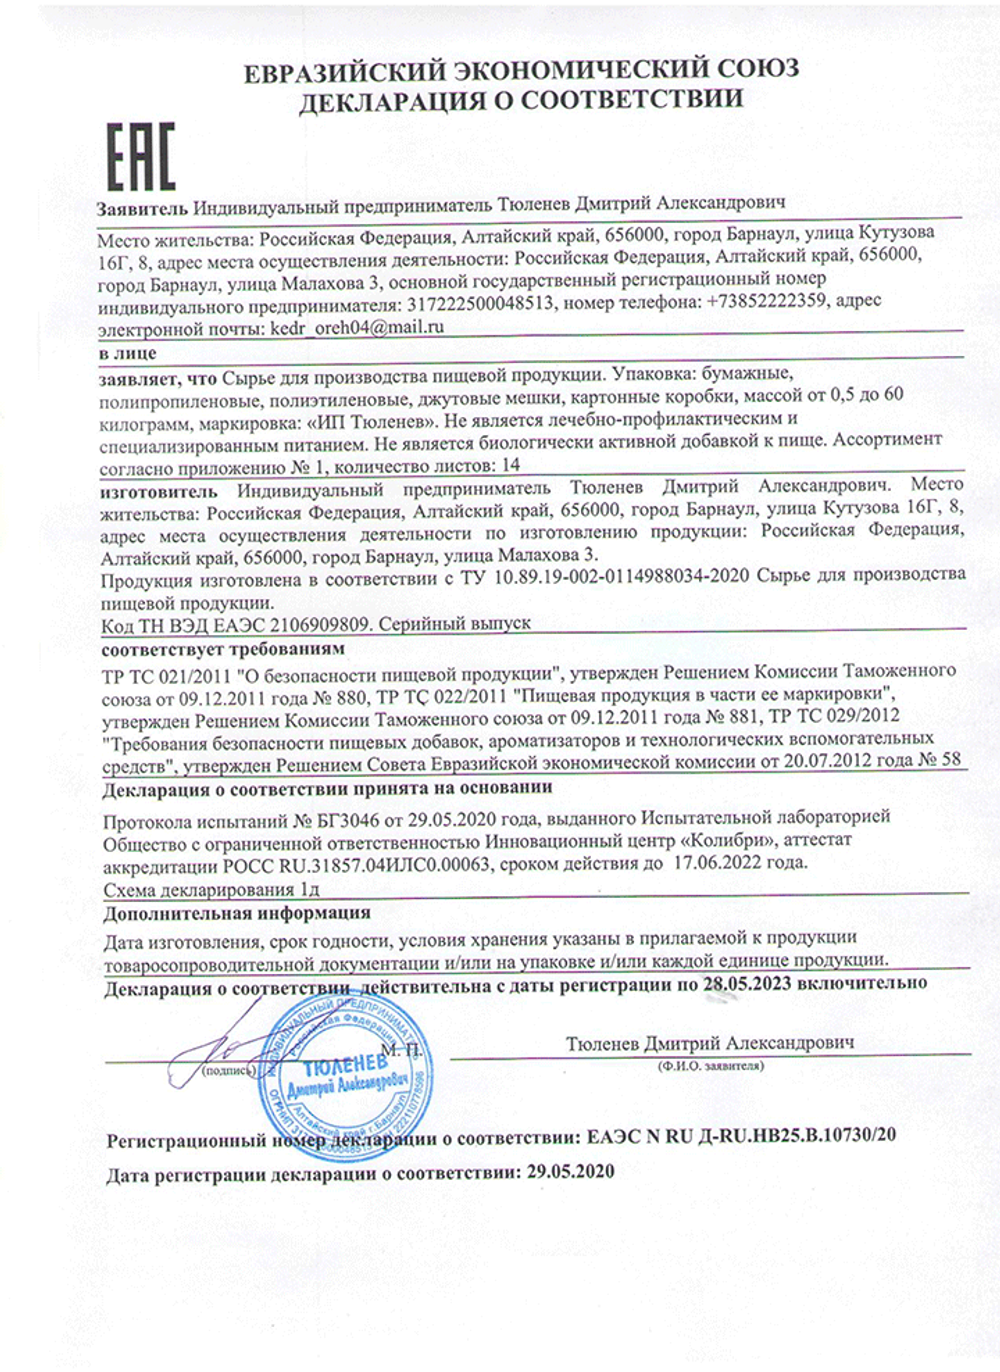 Изображение сертификата соответствия на траву желтушника серого-adonnis.ru